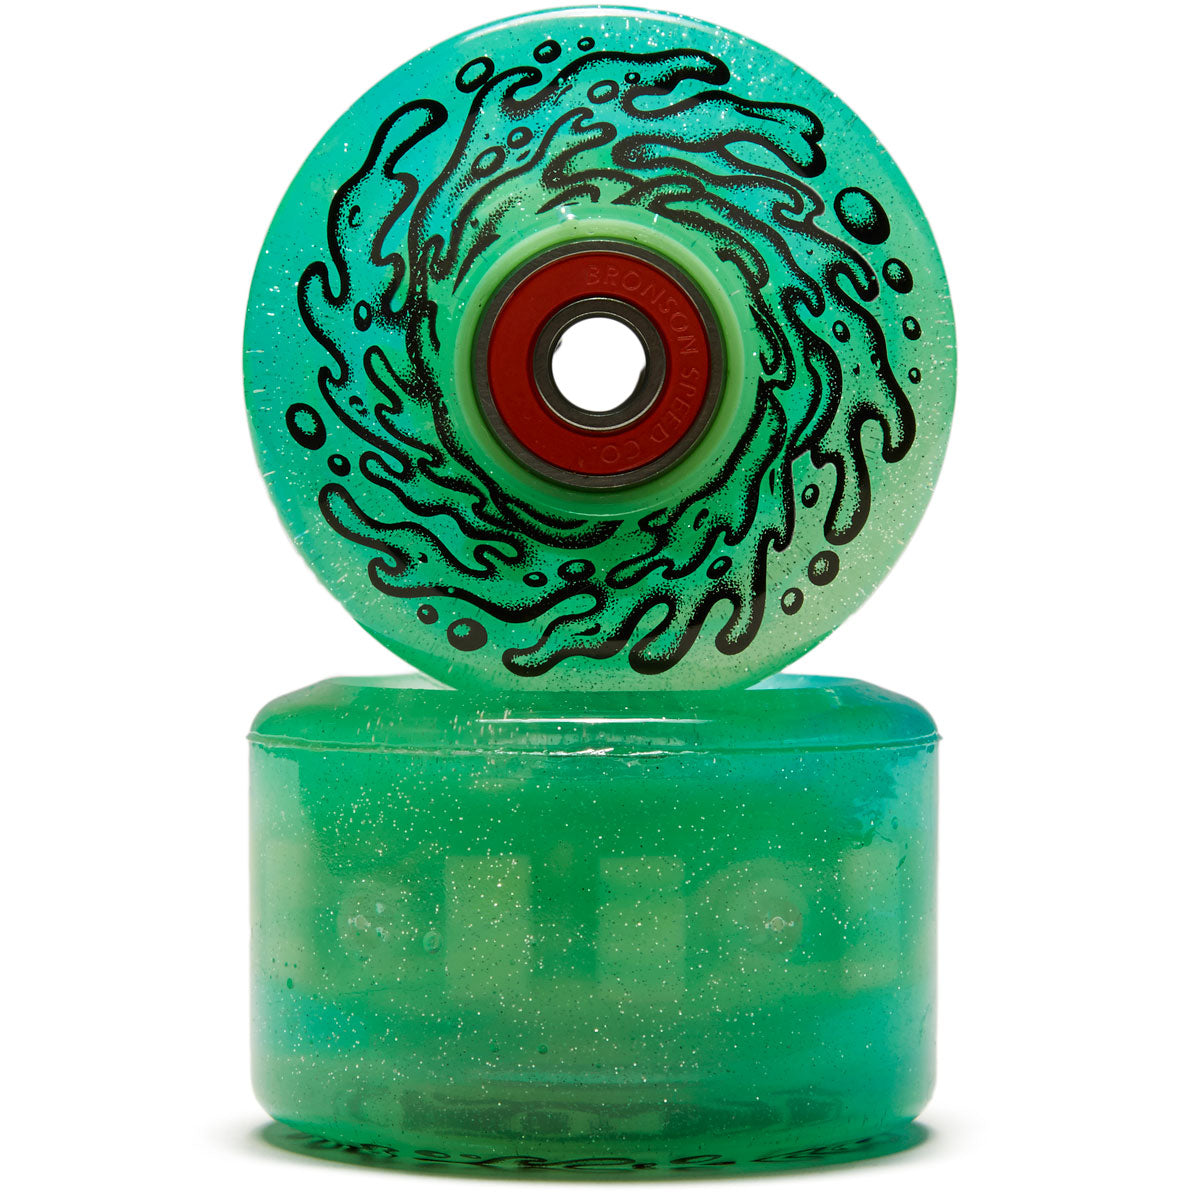 Slime Balls Light Ups OG Slime 78a Skateboard Wheels - Blue/Green Glitter - 60mm image 2